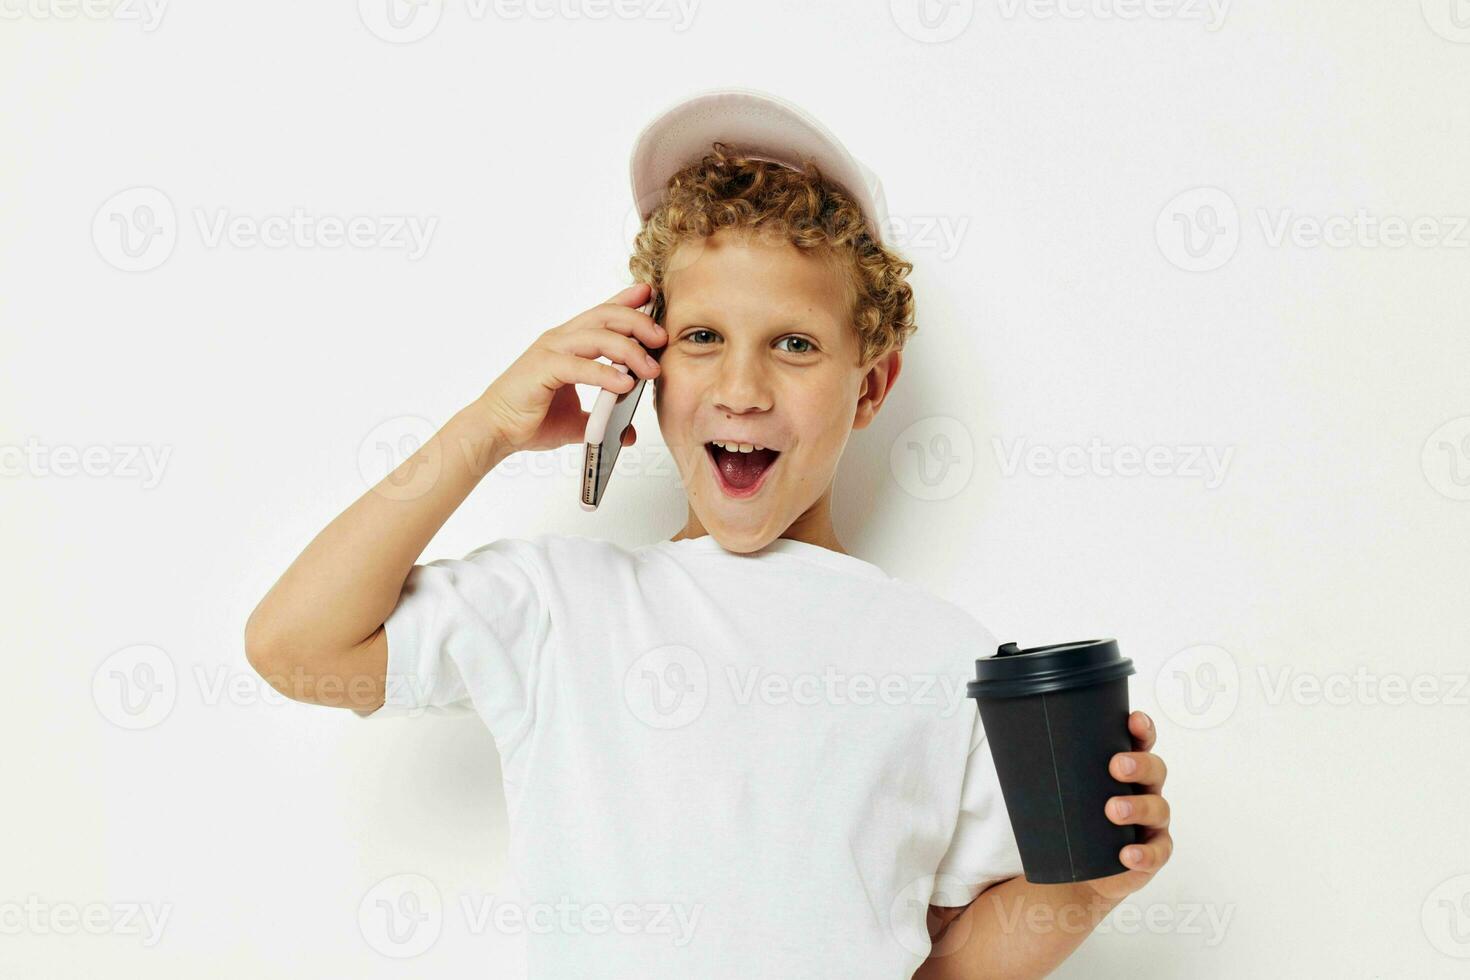 söt pojke Vad snäll av dryck är de telefon i hand kommunikation ljus bakgrund oförändrad foto